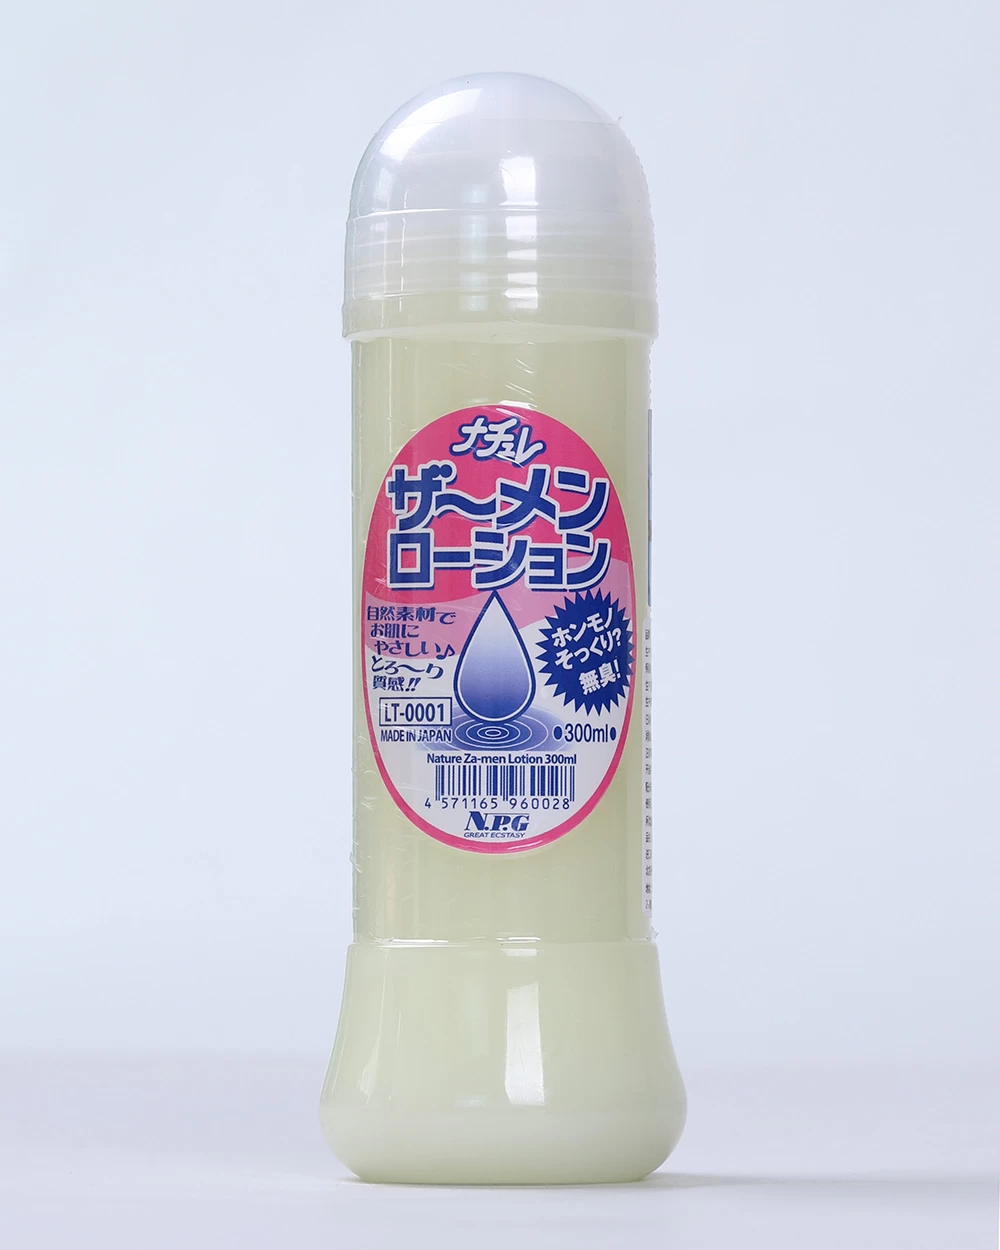  Đại lý Gel bôi trơn massage dạng tinh dịch cao cấp NPG Nature Za-men Lotion Made in Japan loại tốt